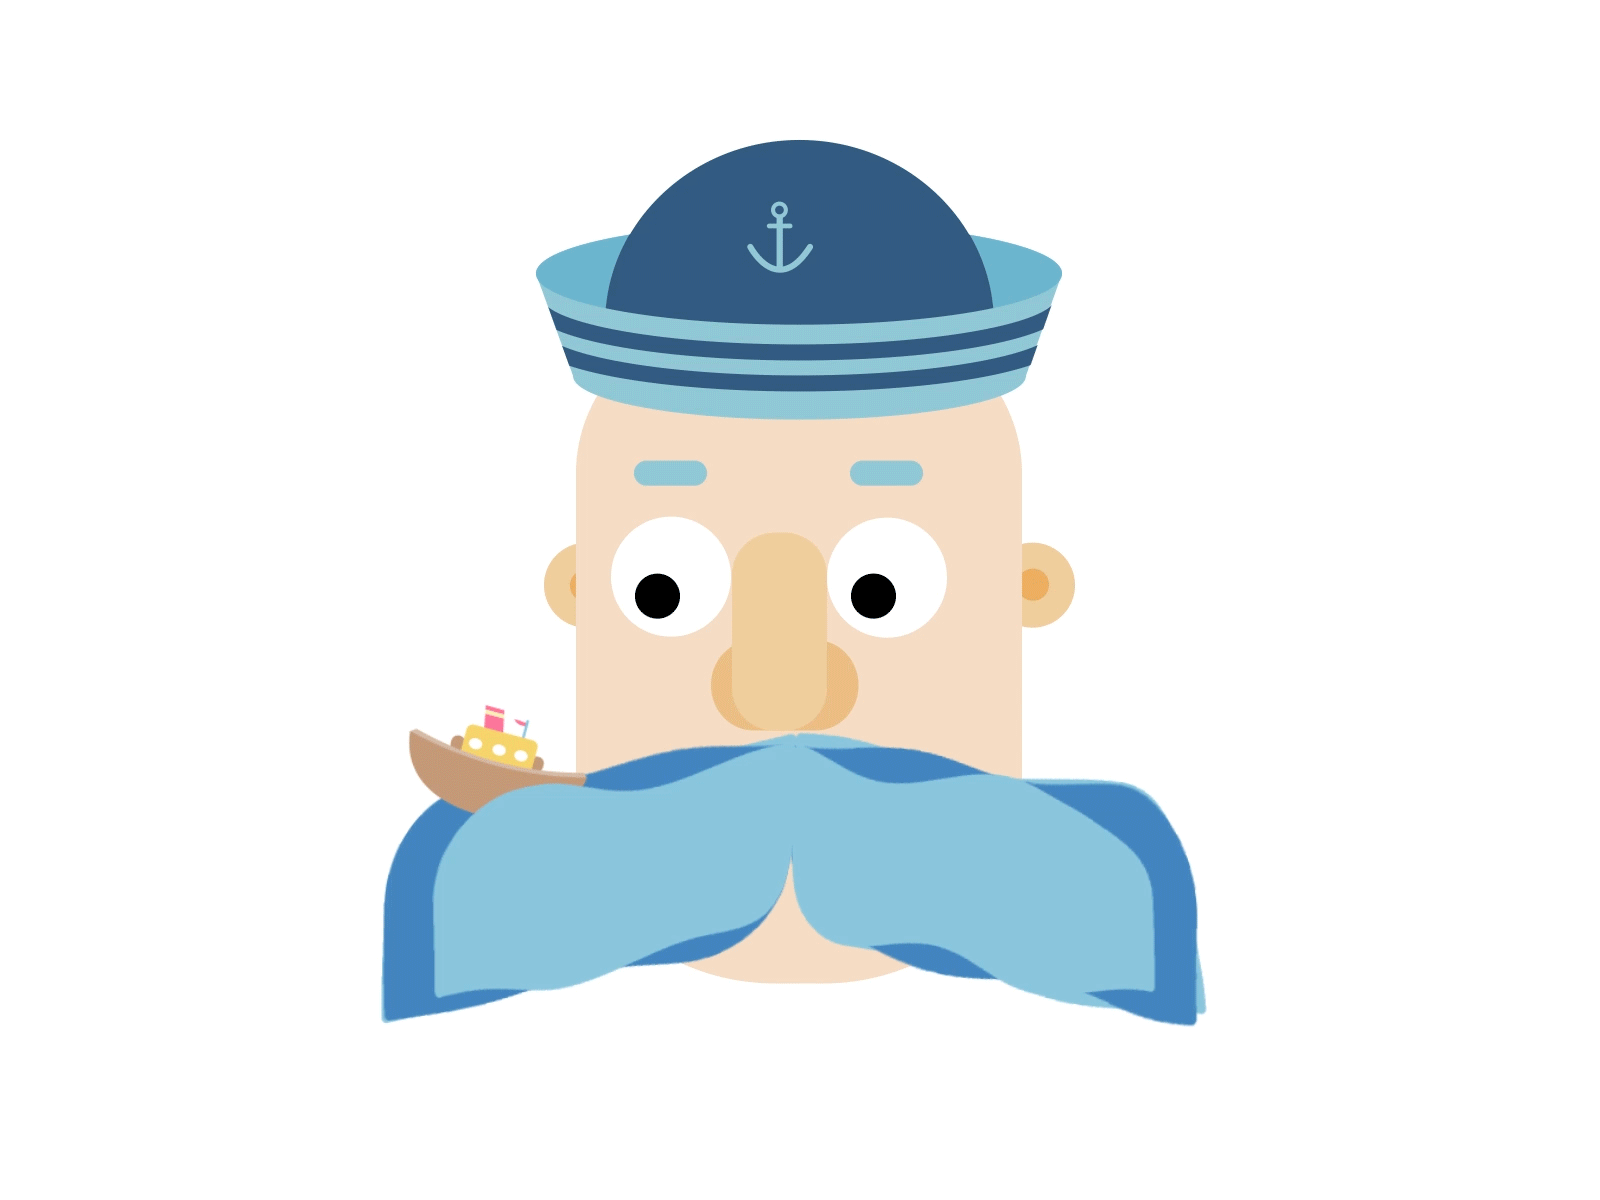 Sailor with a wavy moustache